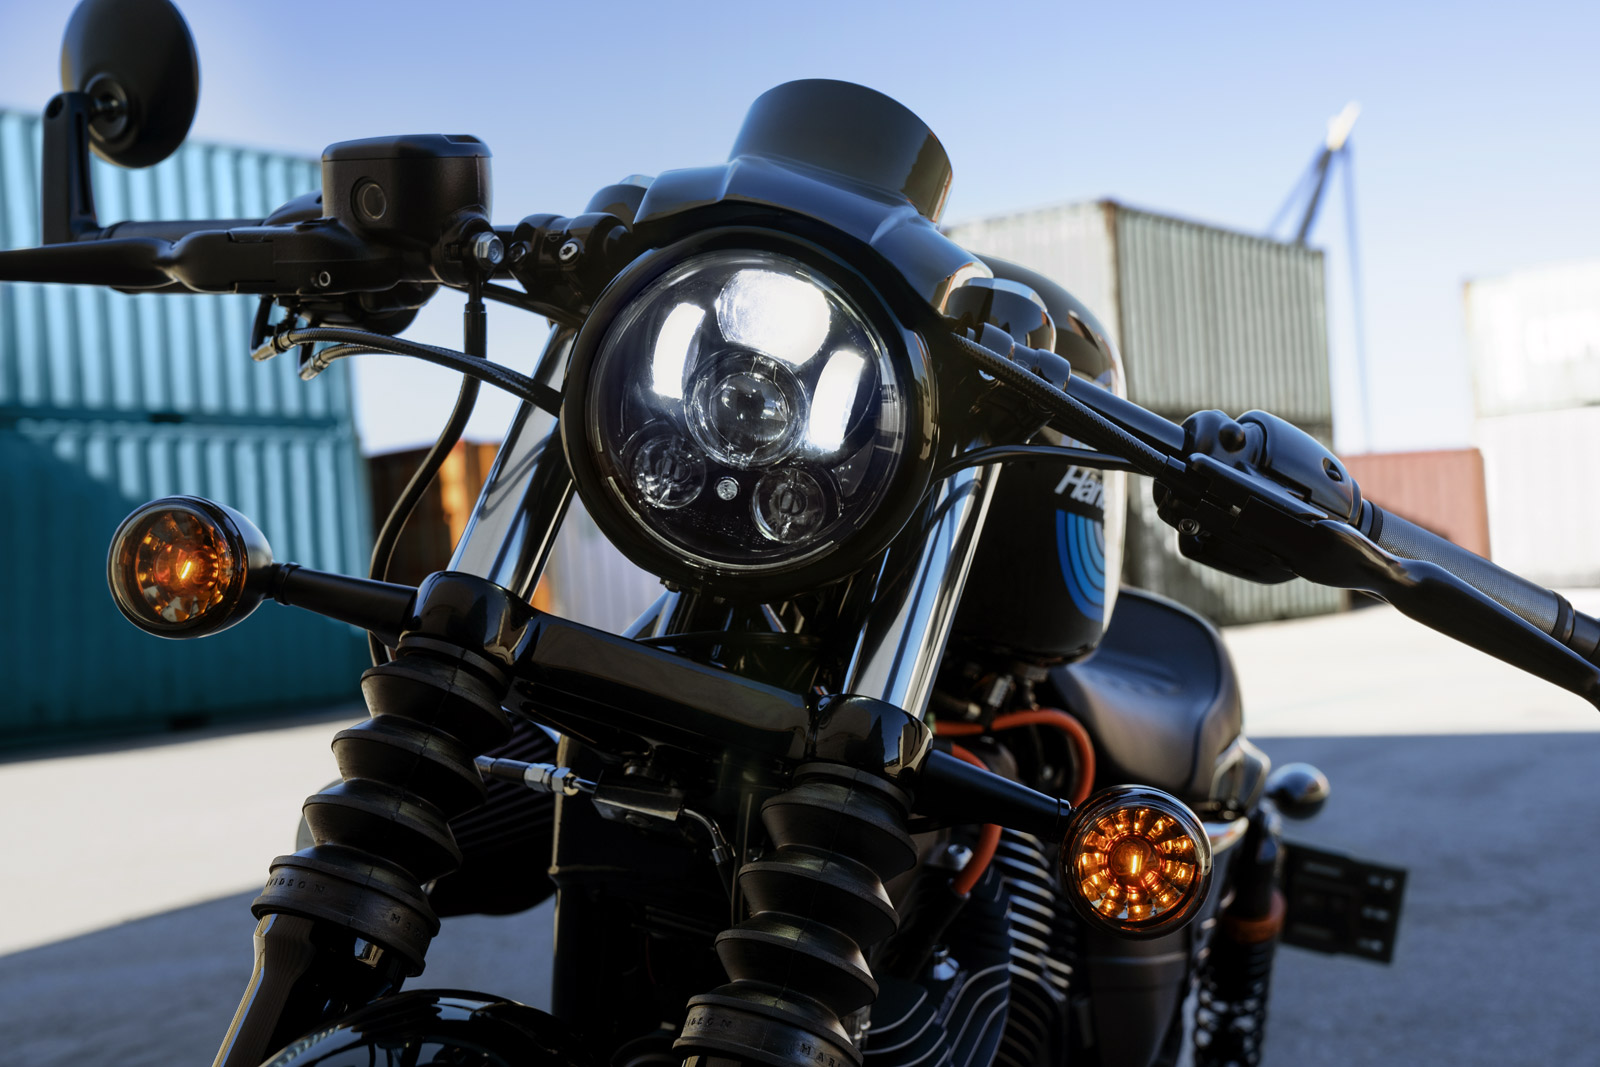 5.75" 5-3/4" LED Motorrad Scheinwerfer 50W für Harley Night Rod Rocker Sportster